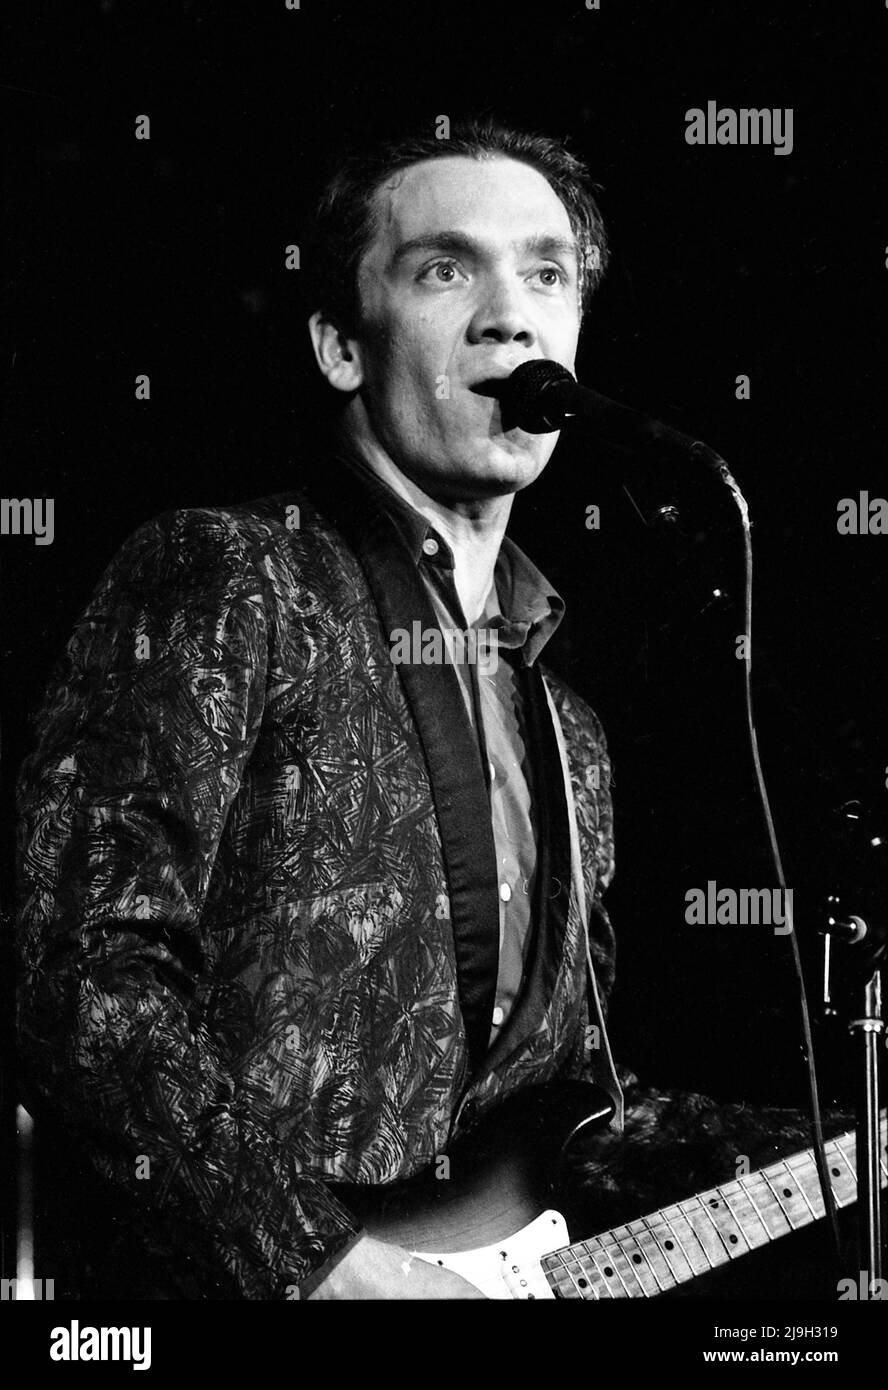 Músico G.E. Smith actuando en Los Angeles, CA, 1981 Foto de stock